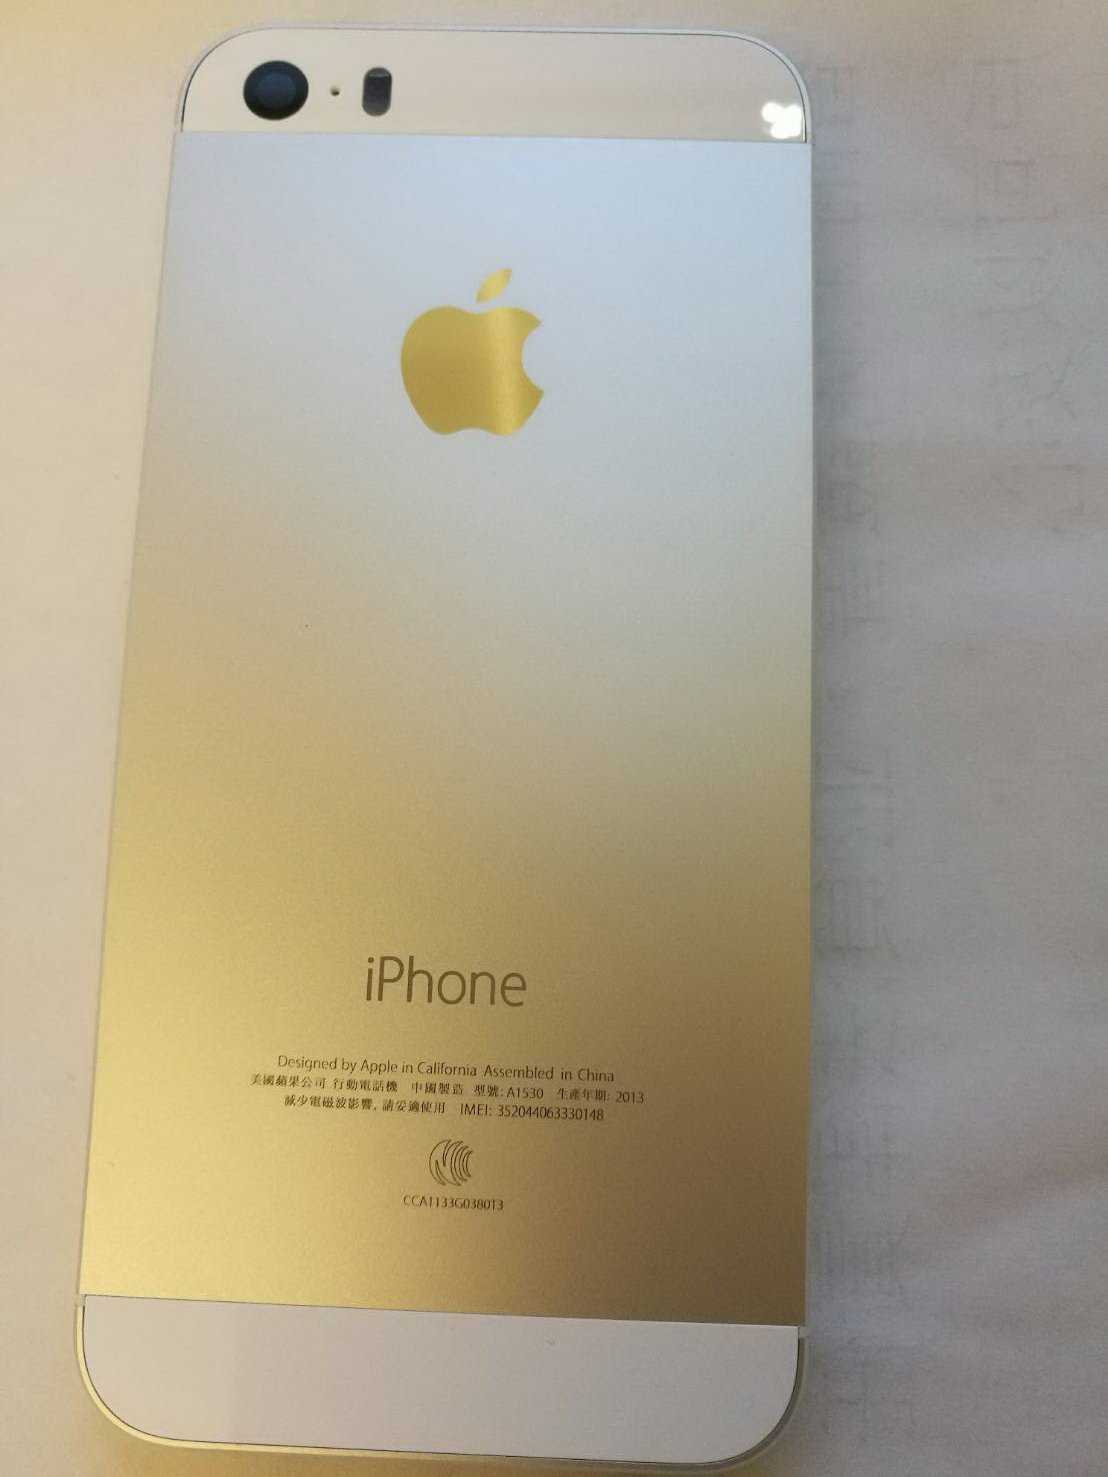 【原廠背蓋】Apple iphone 5S 原廠背蓋 背殼 手機殼 贈手工具 (含側按鍵) - 銀色